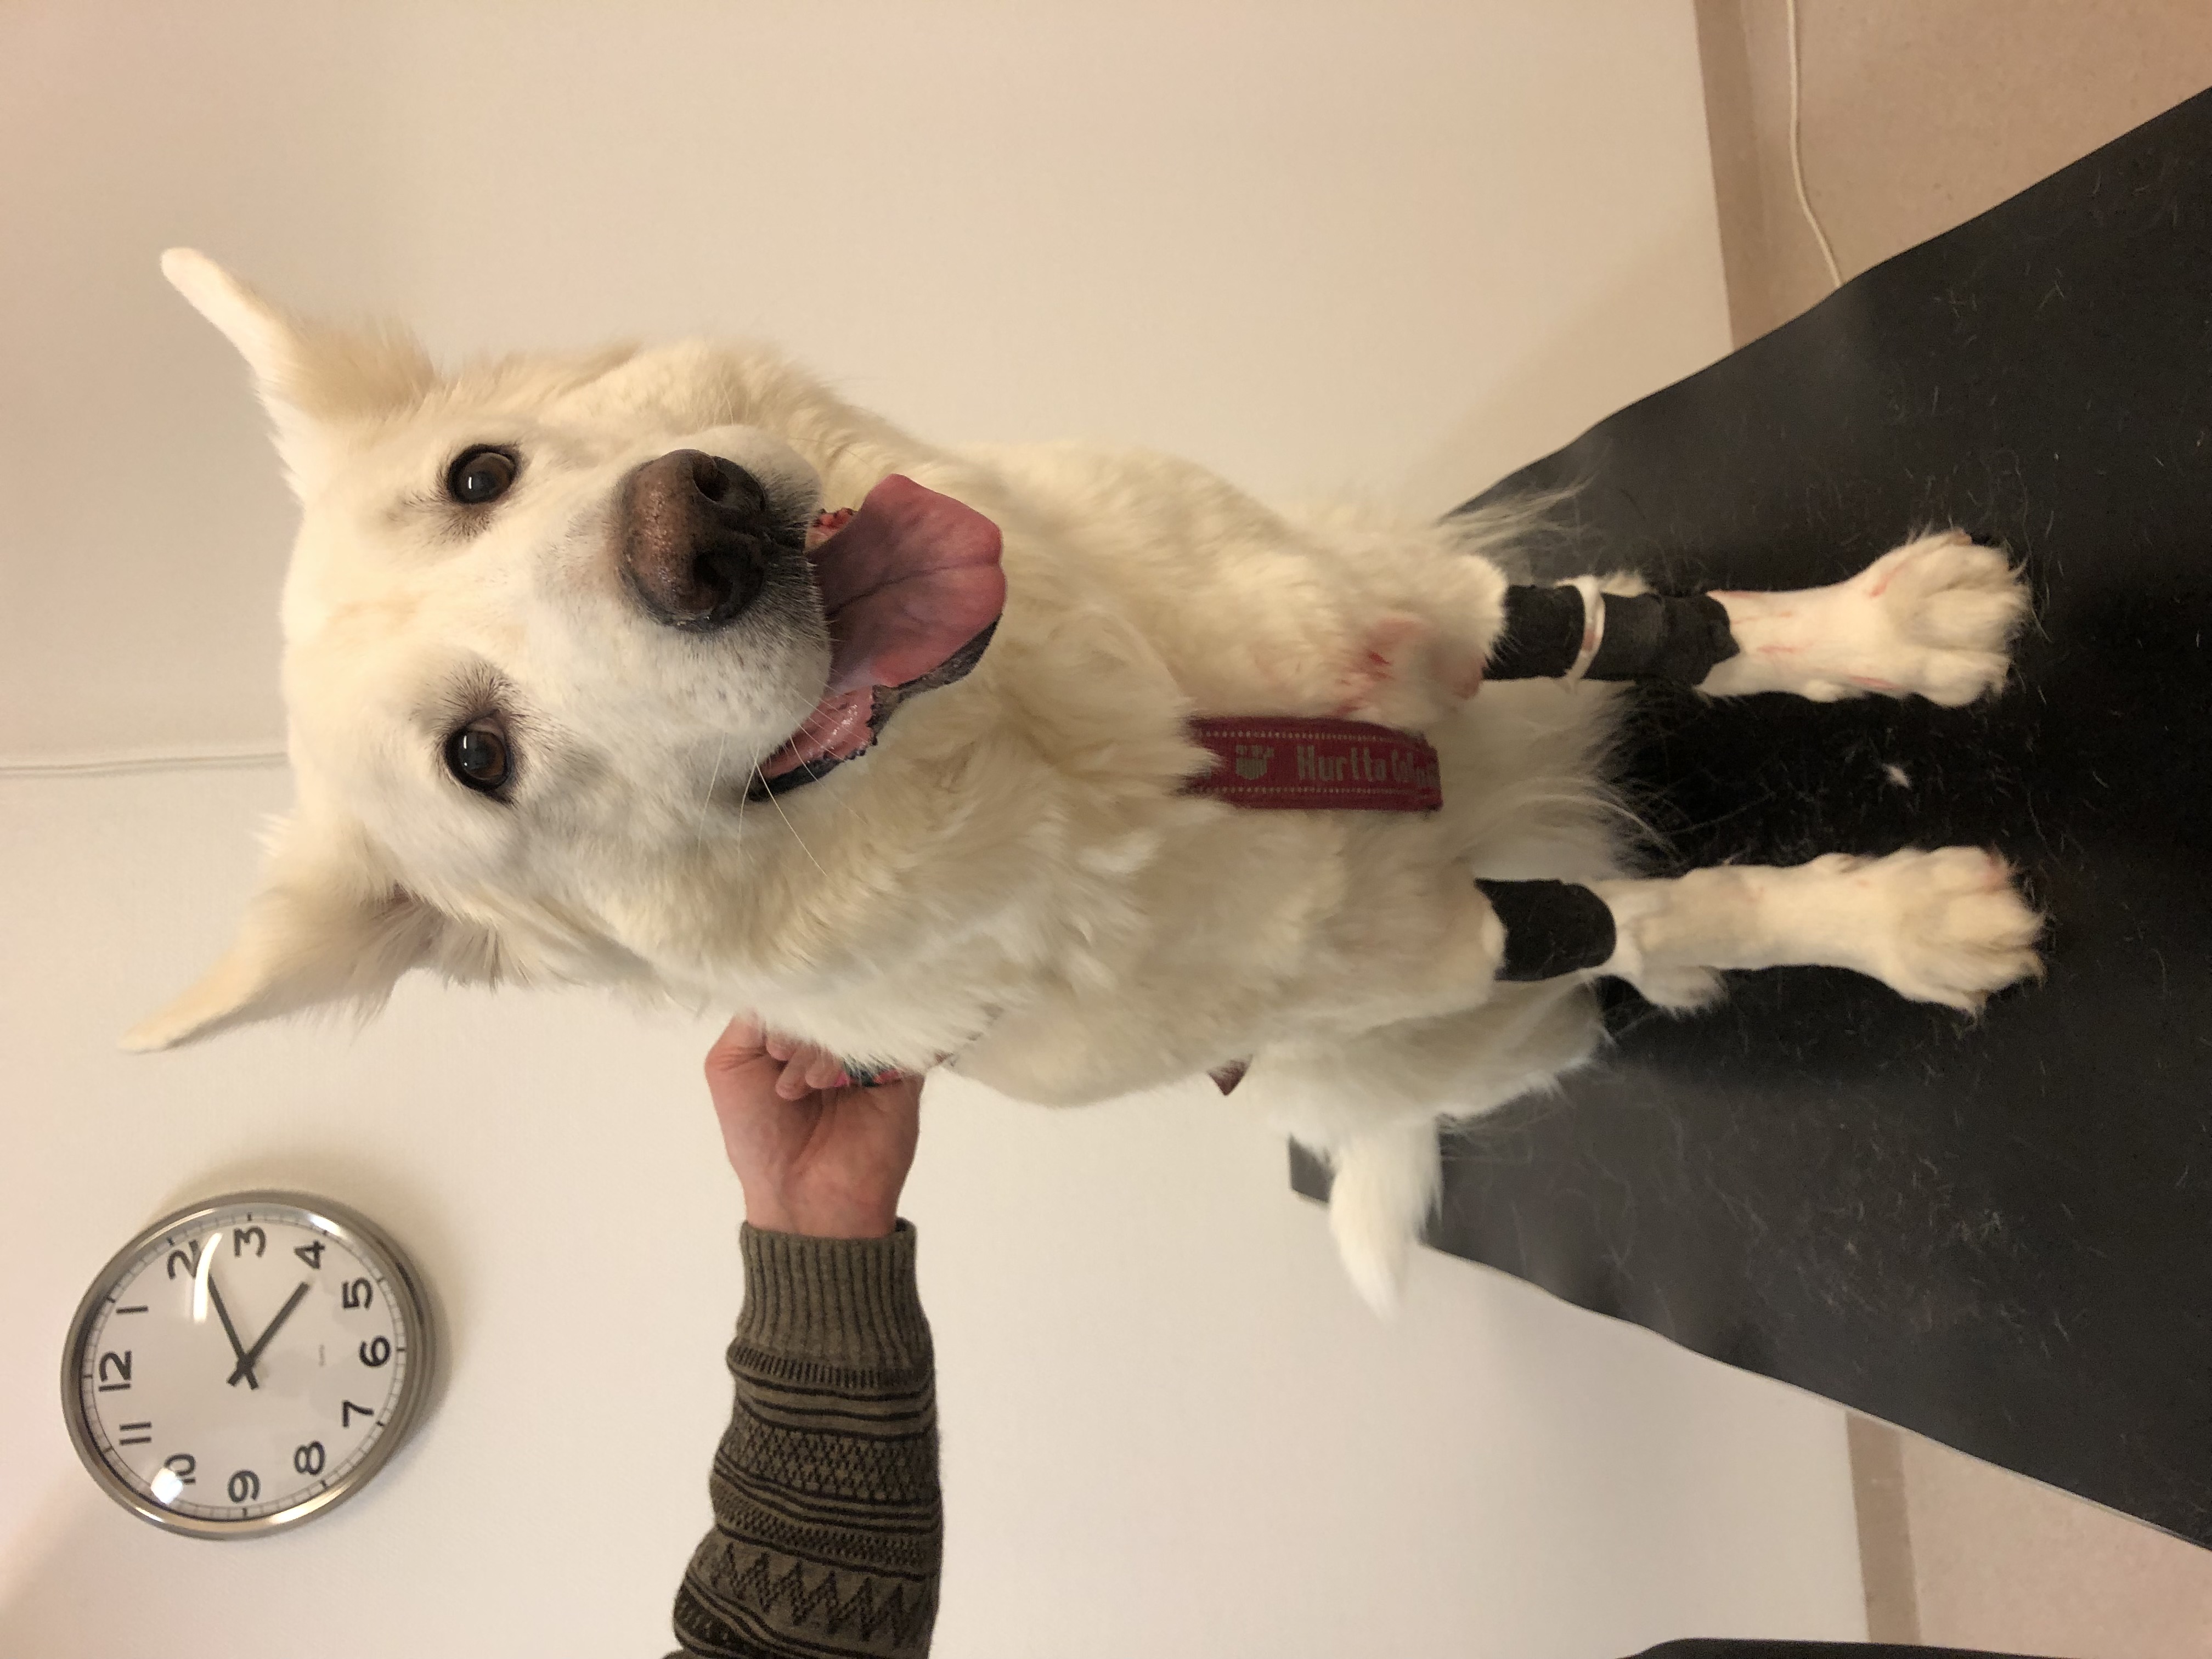 Nova på veterinärbesök